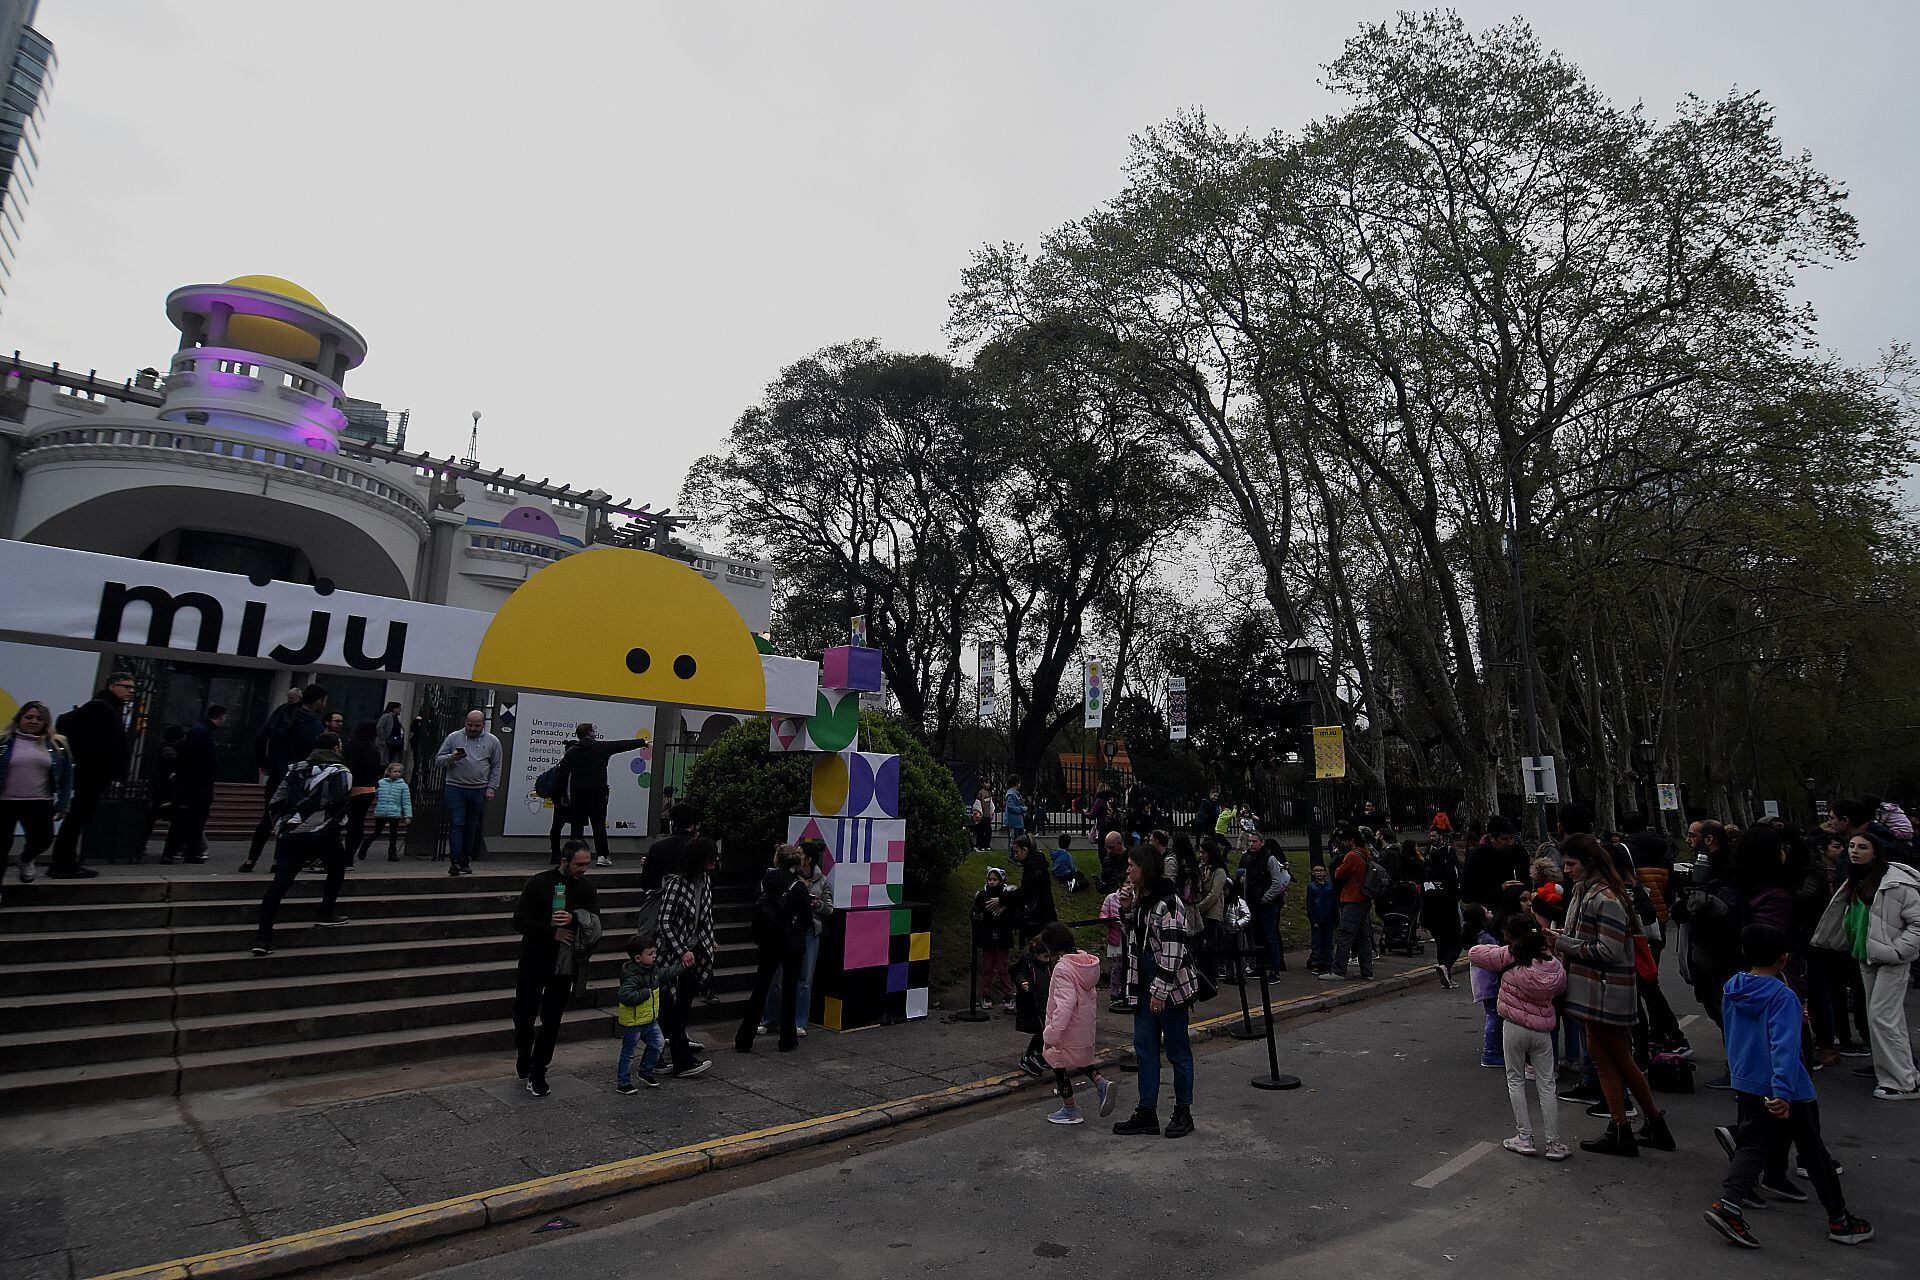 El MIJU (Museo de la Imaginación y los Juegos) en Puerto Madero-Costanera Sur fue abierto al público este sábado (Foto: Nicolás Stulberg)